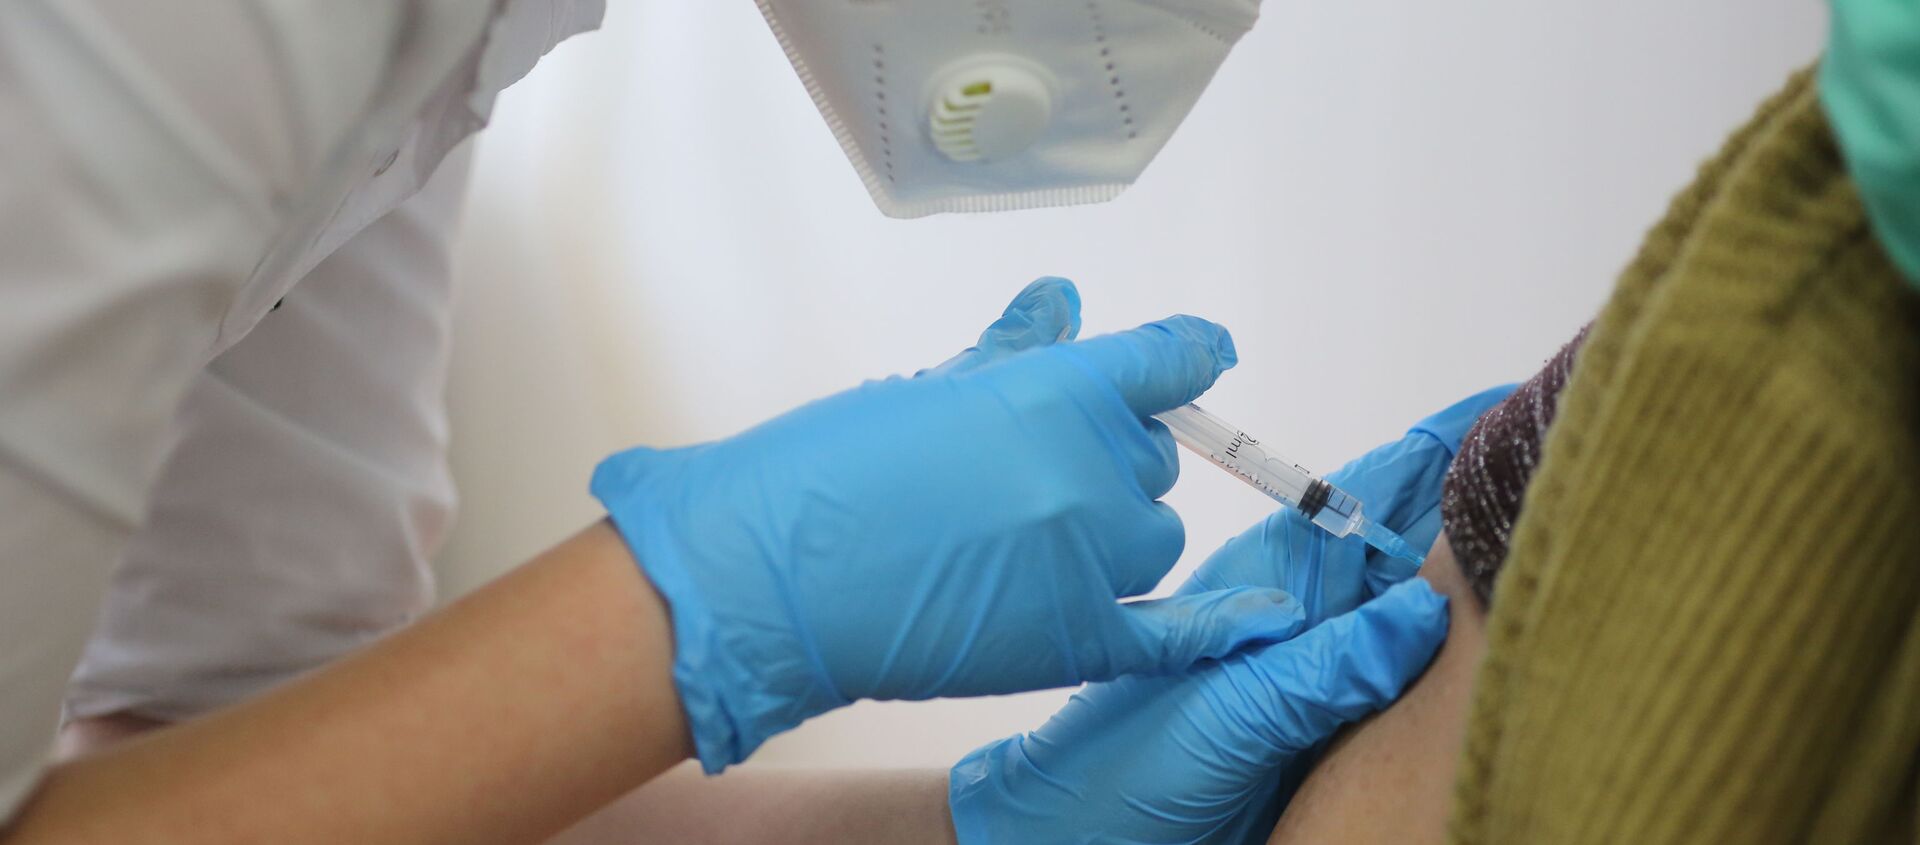 Медсестра делает прививку пациенту от коронавируса вакциной Спутник-V - Sputnik Беларусь, 1920, 10.02.2021